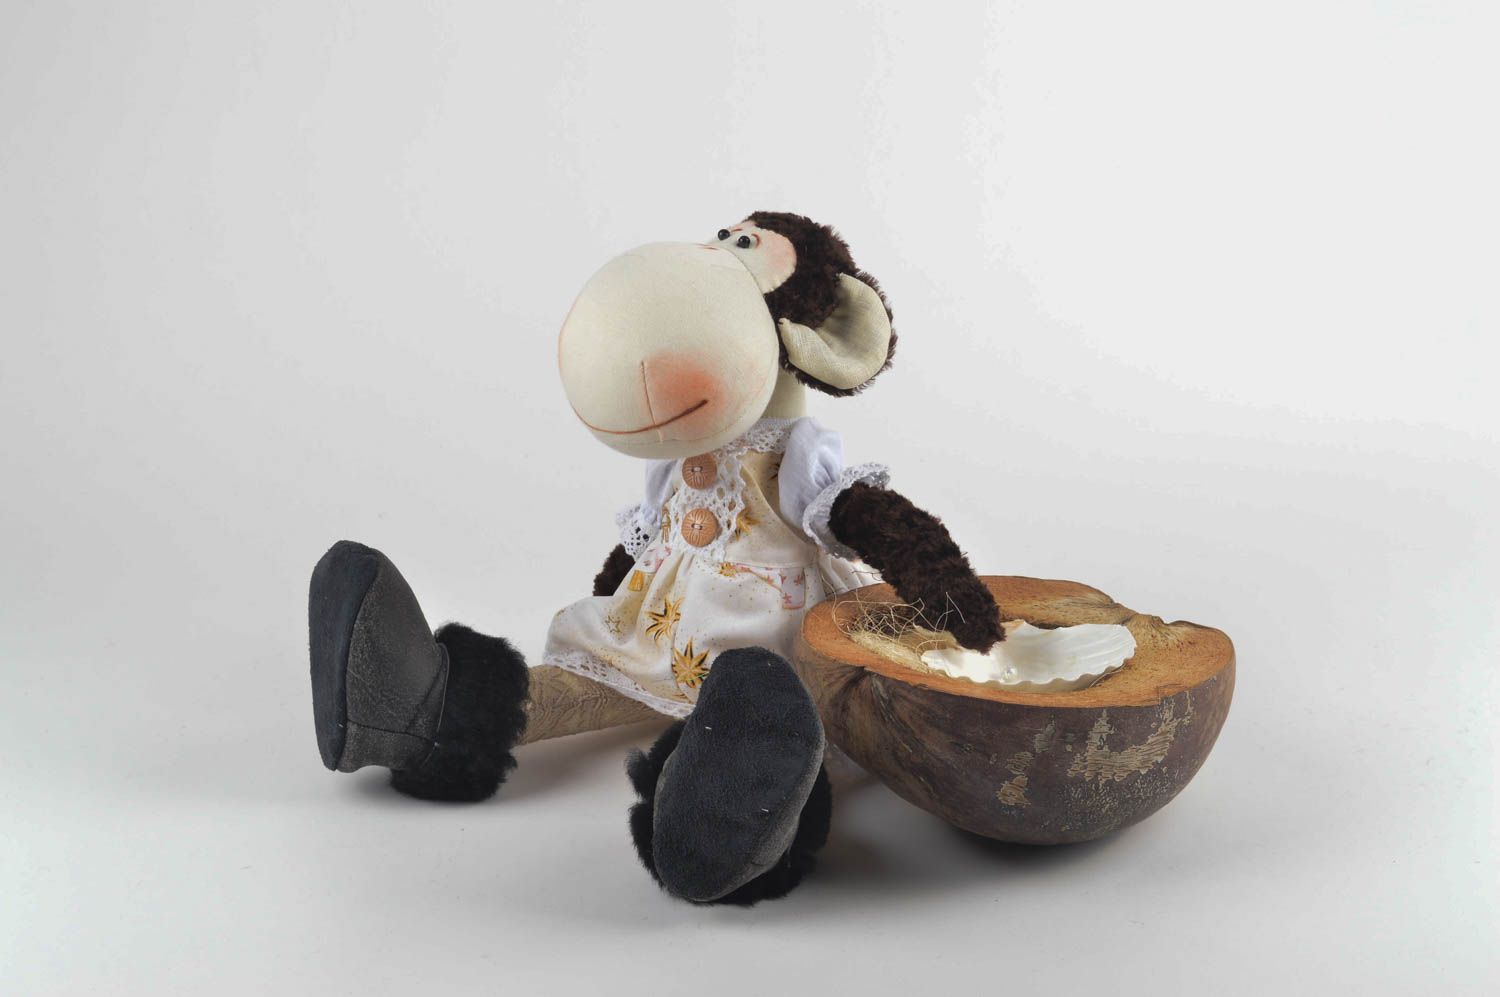 Игрушка обезьяна хэнд мэйд детская игрушка из льна мягкая игрушка интересная фото 1